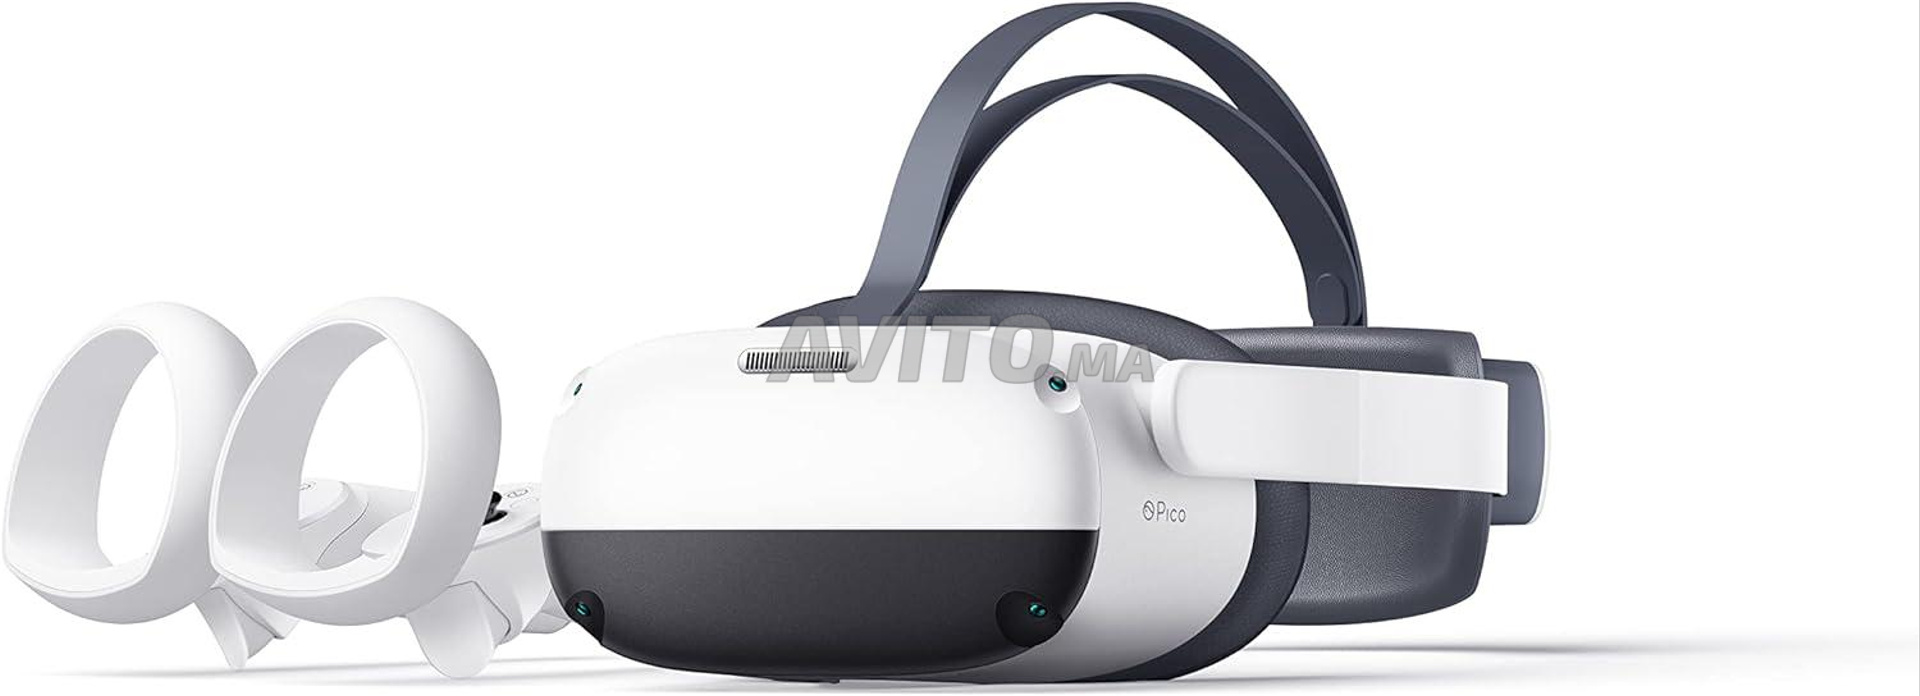 PC VR -  Leader Realite virtuelle au Maroc  Achetez des dispositifs de réalité  virtuelle en ligne